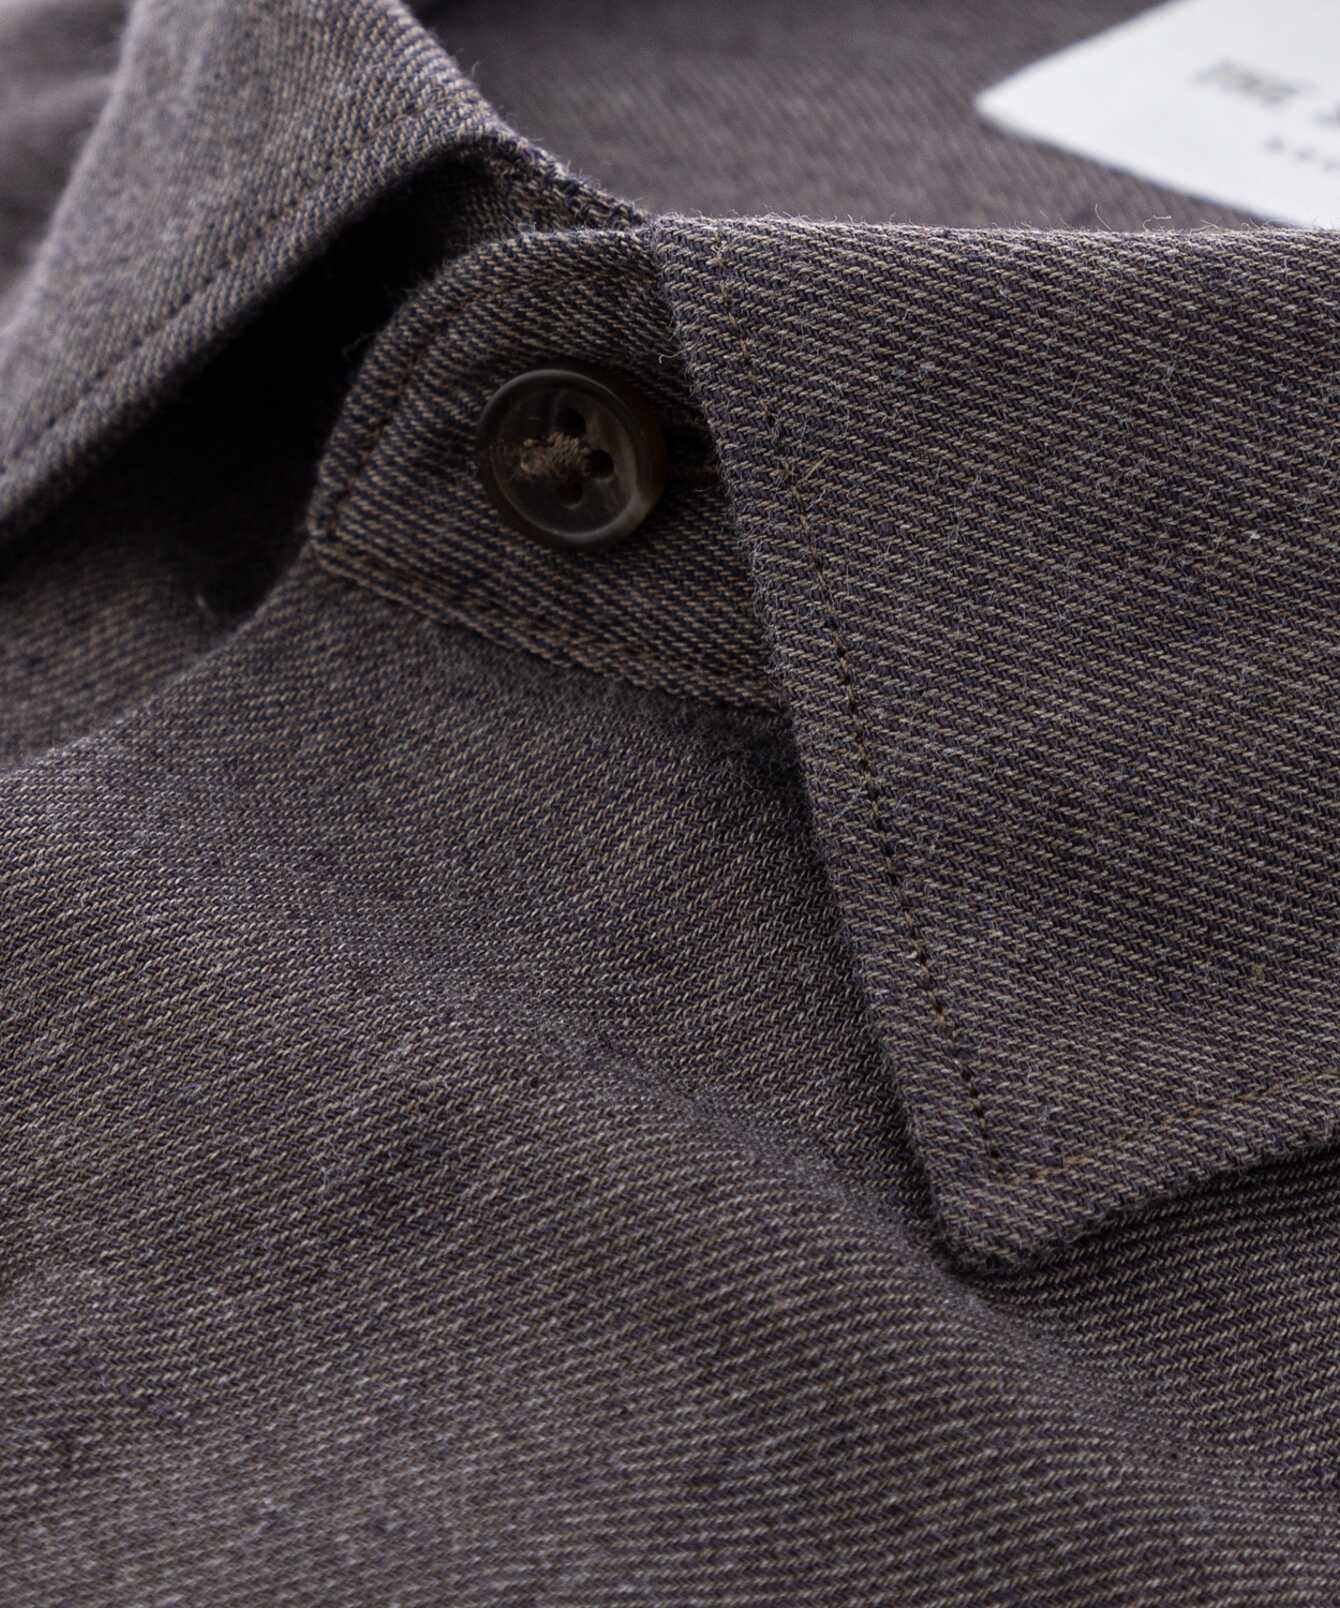 Shirt Webster Brown Cotton Linen Shirt  The Shirt Factory